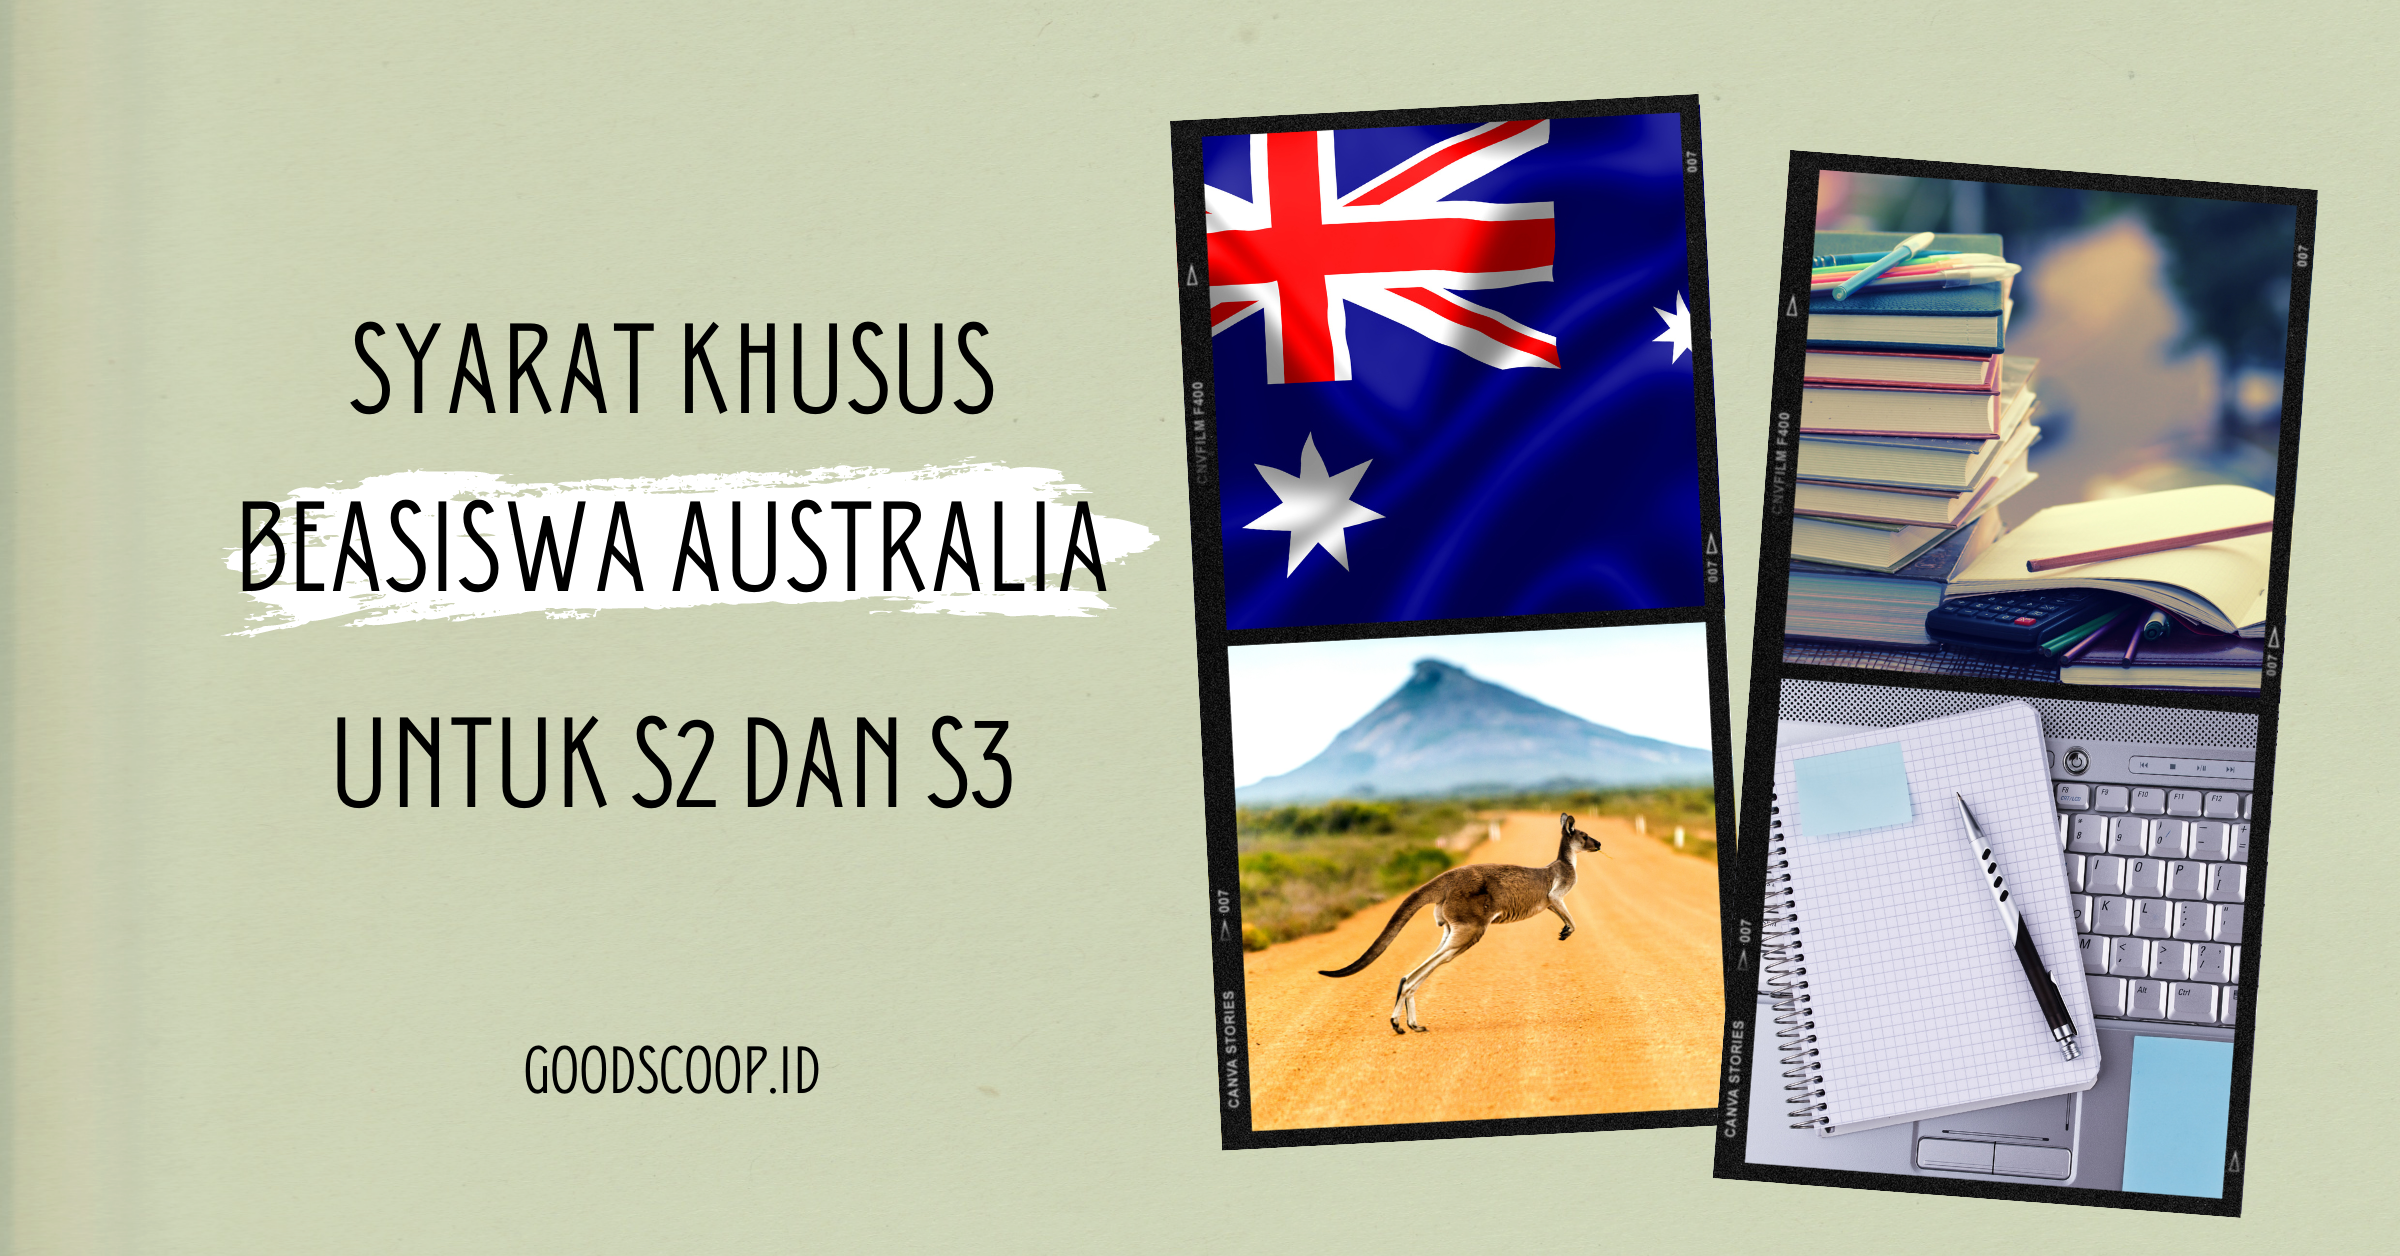 Beasiswa Australia Syarat S2 S3